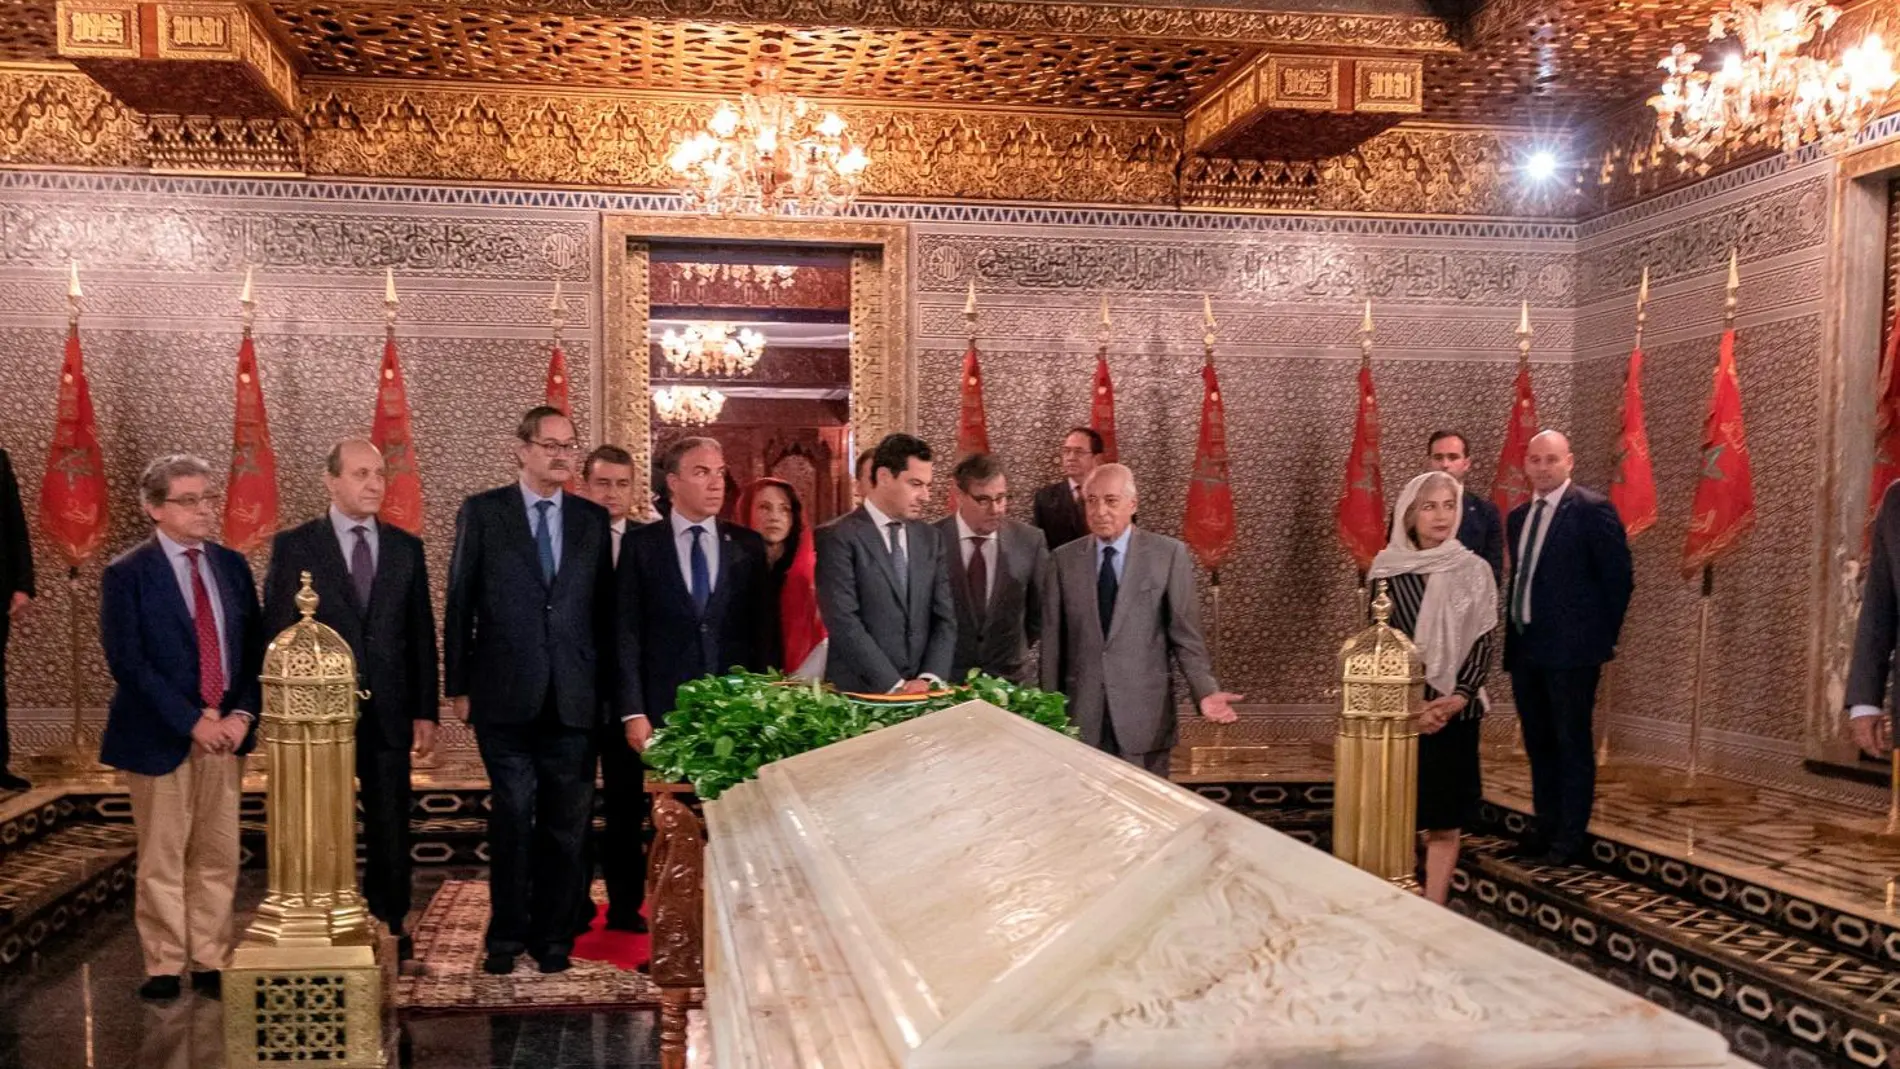 La delegación andaluza, con el presidente Juanma Moreno a la cabeza, visitó el Mausoleo de Mohamed V, donde realizó una ofrenda floral /Foto: EFE